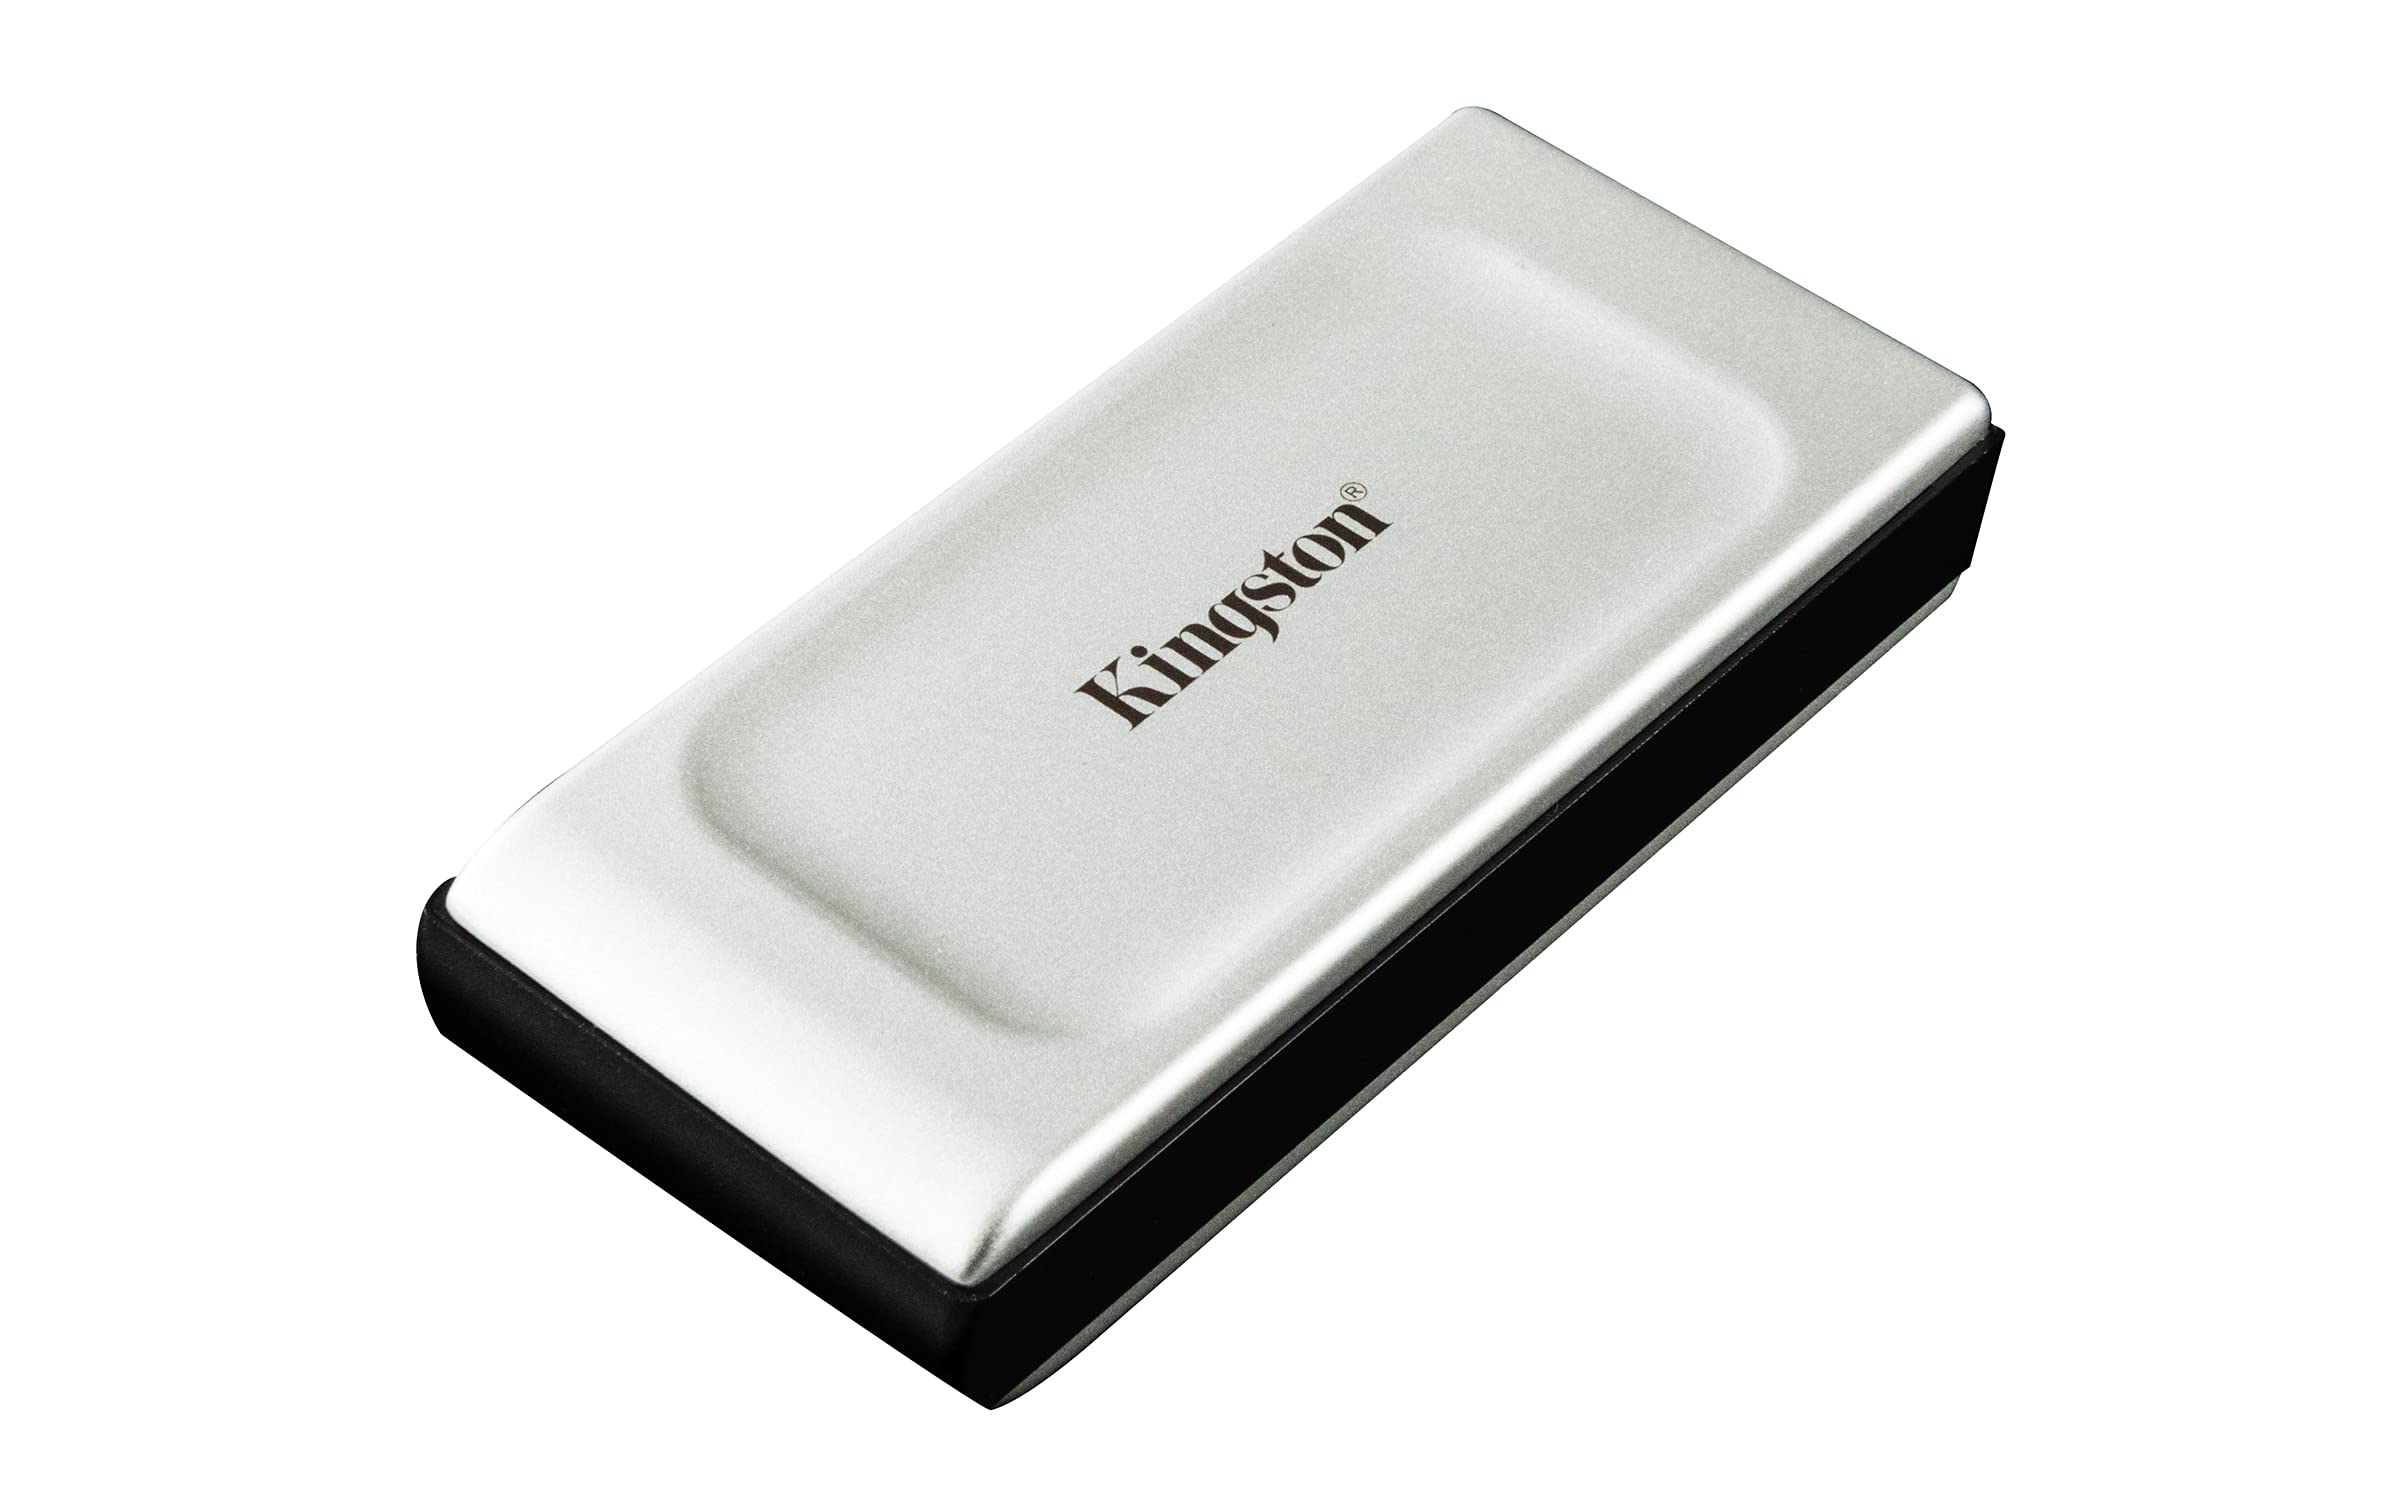 Este mini SSD externo de 1 TB cabe en el bolsillo, resiste caídas y es  rapidísimo